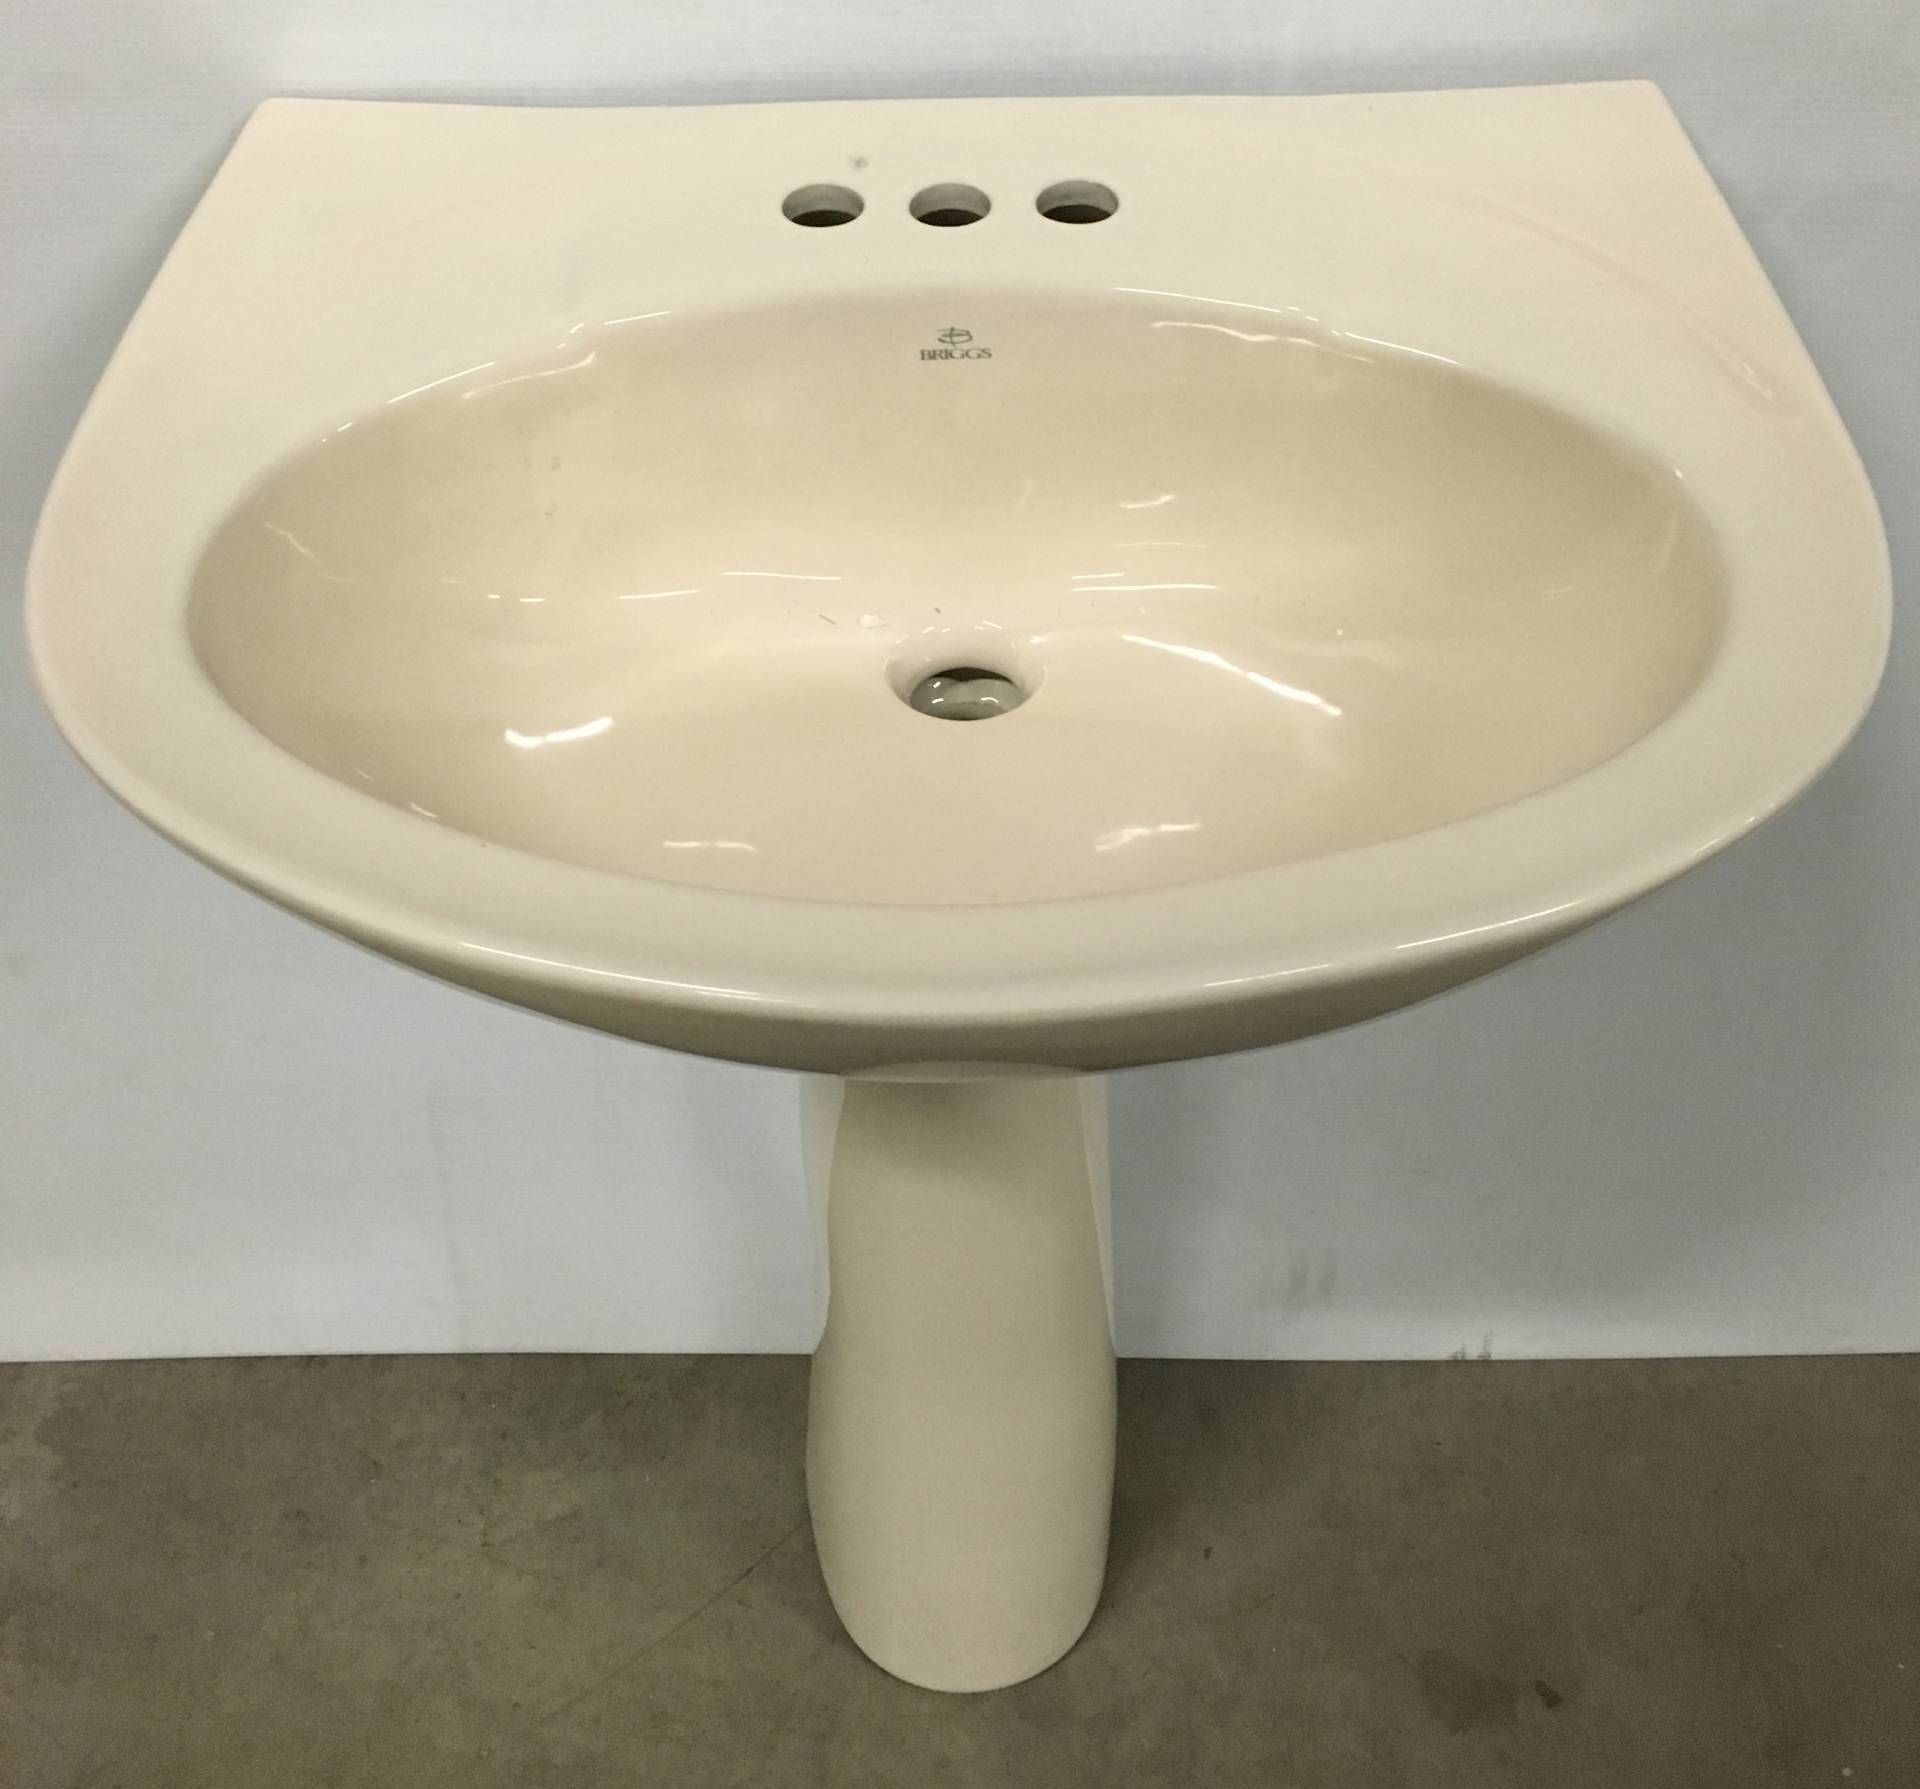 Briggs Altima Biscuit Pedestal Sink 8" center holes